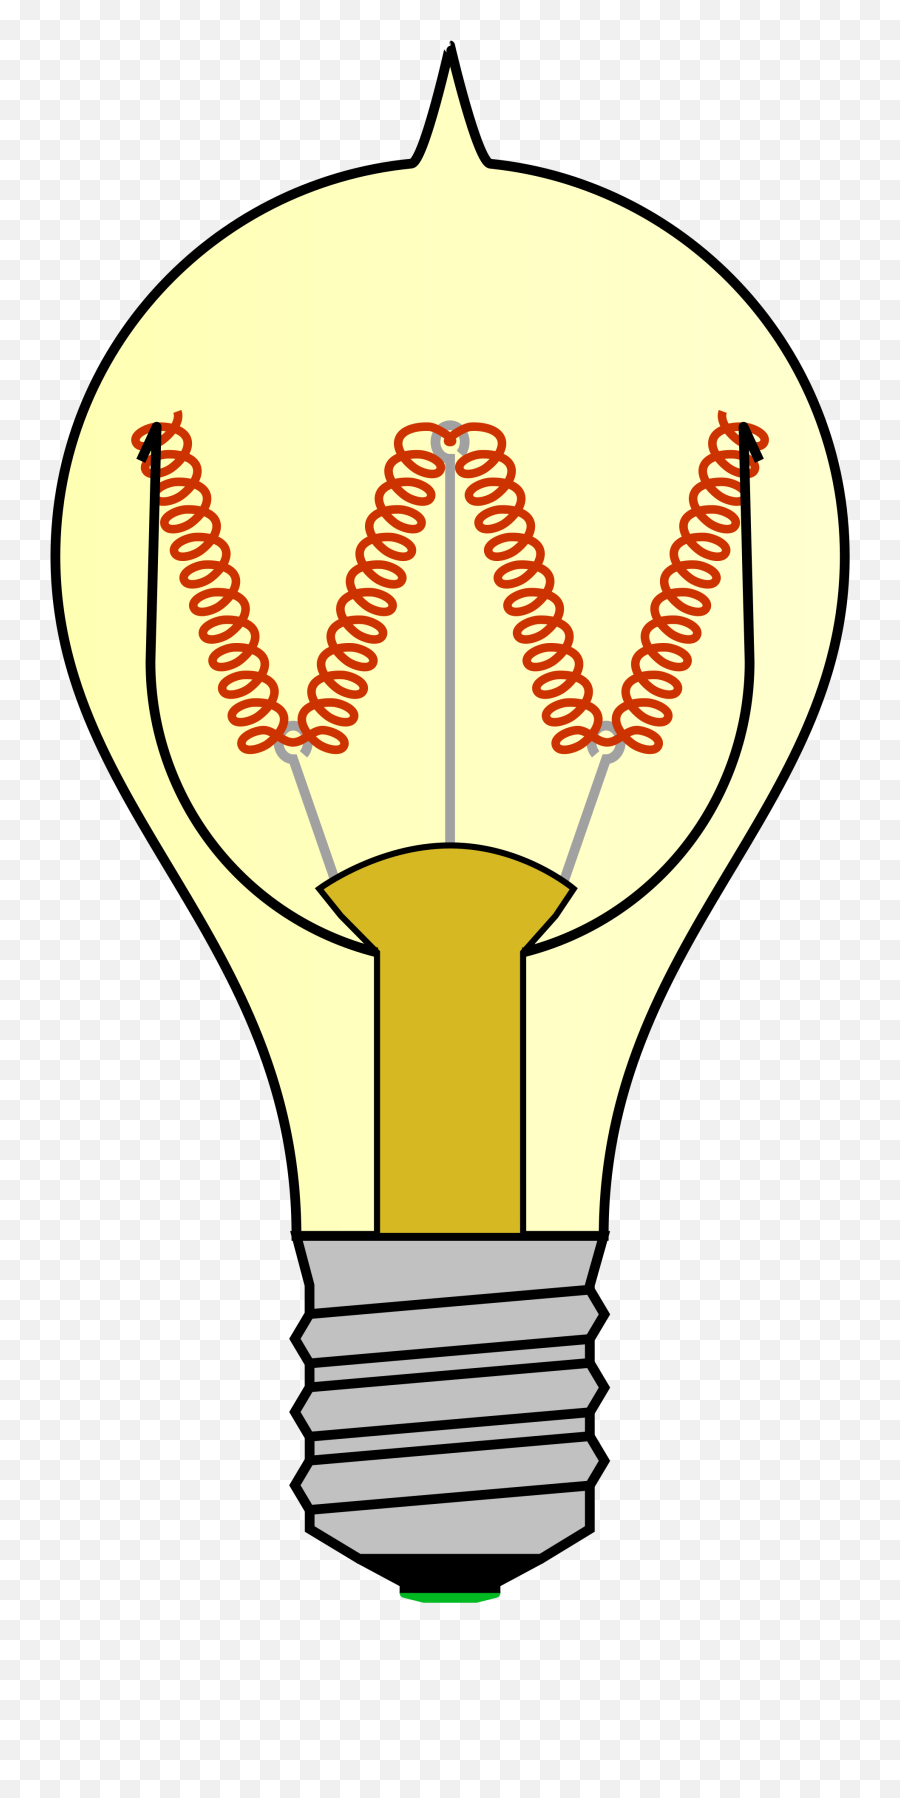 Incandescent Old Light Bulb - Emblem Transparent Cartoon Bulb Diagram Png,Lightbulb Clipart Transparent